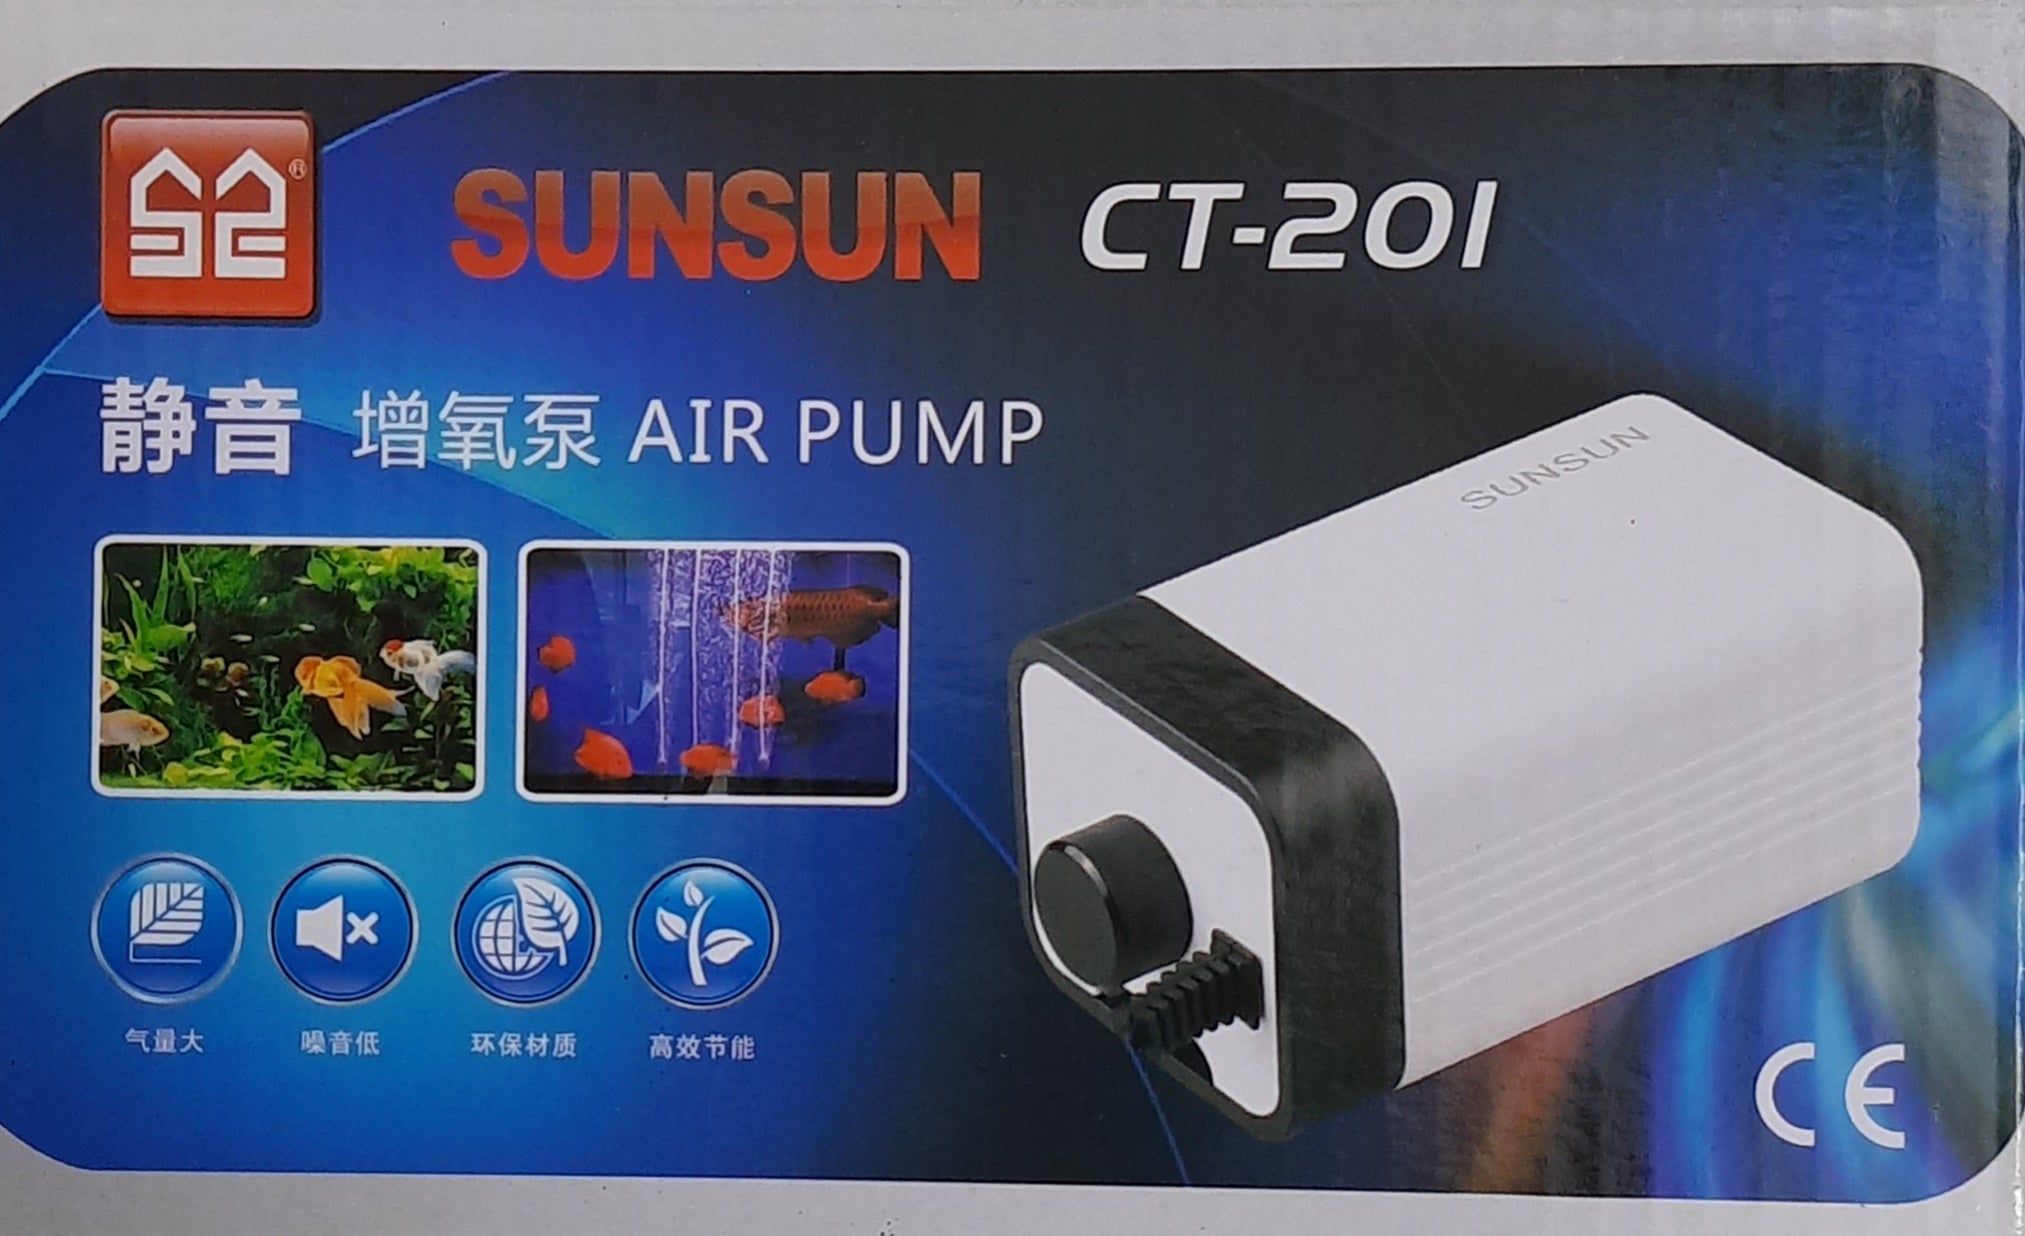 Sunsun CT-201 Air Pump with Controller